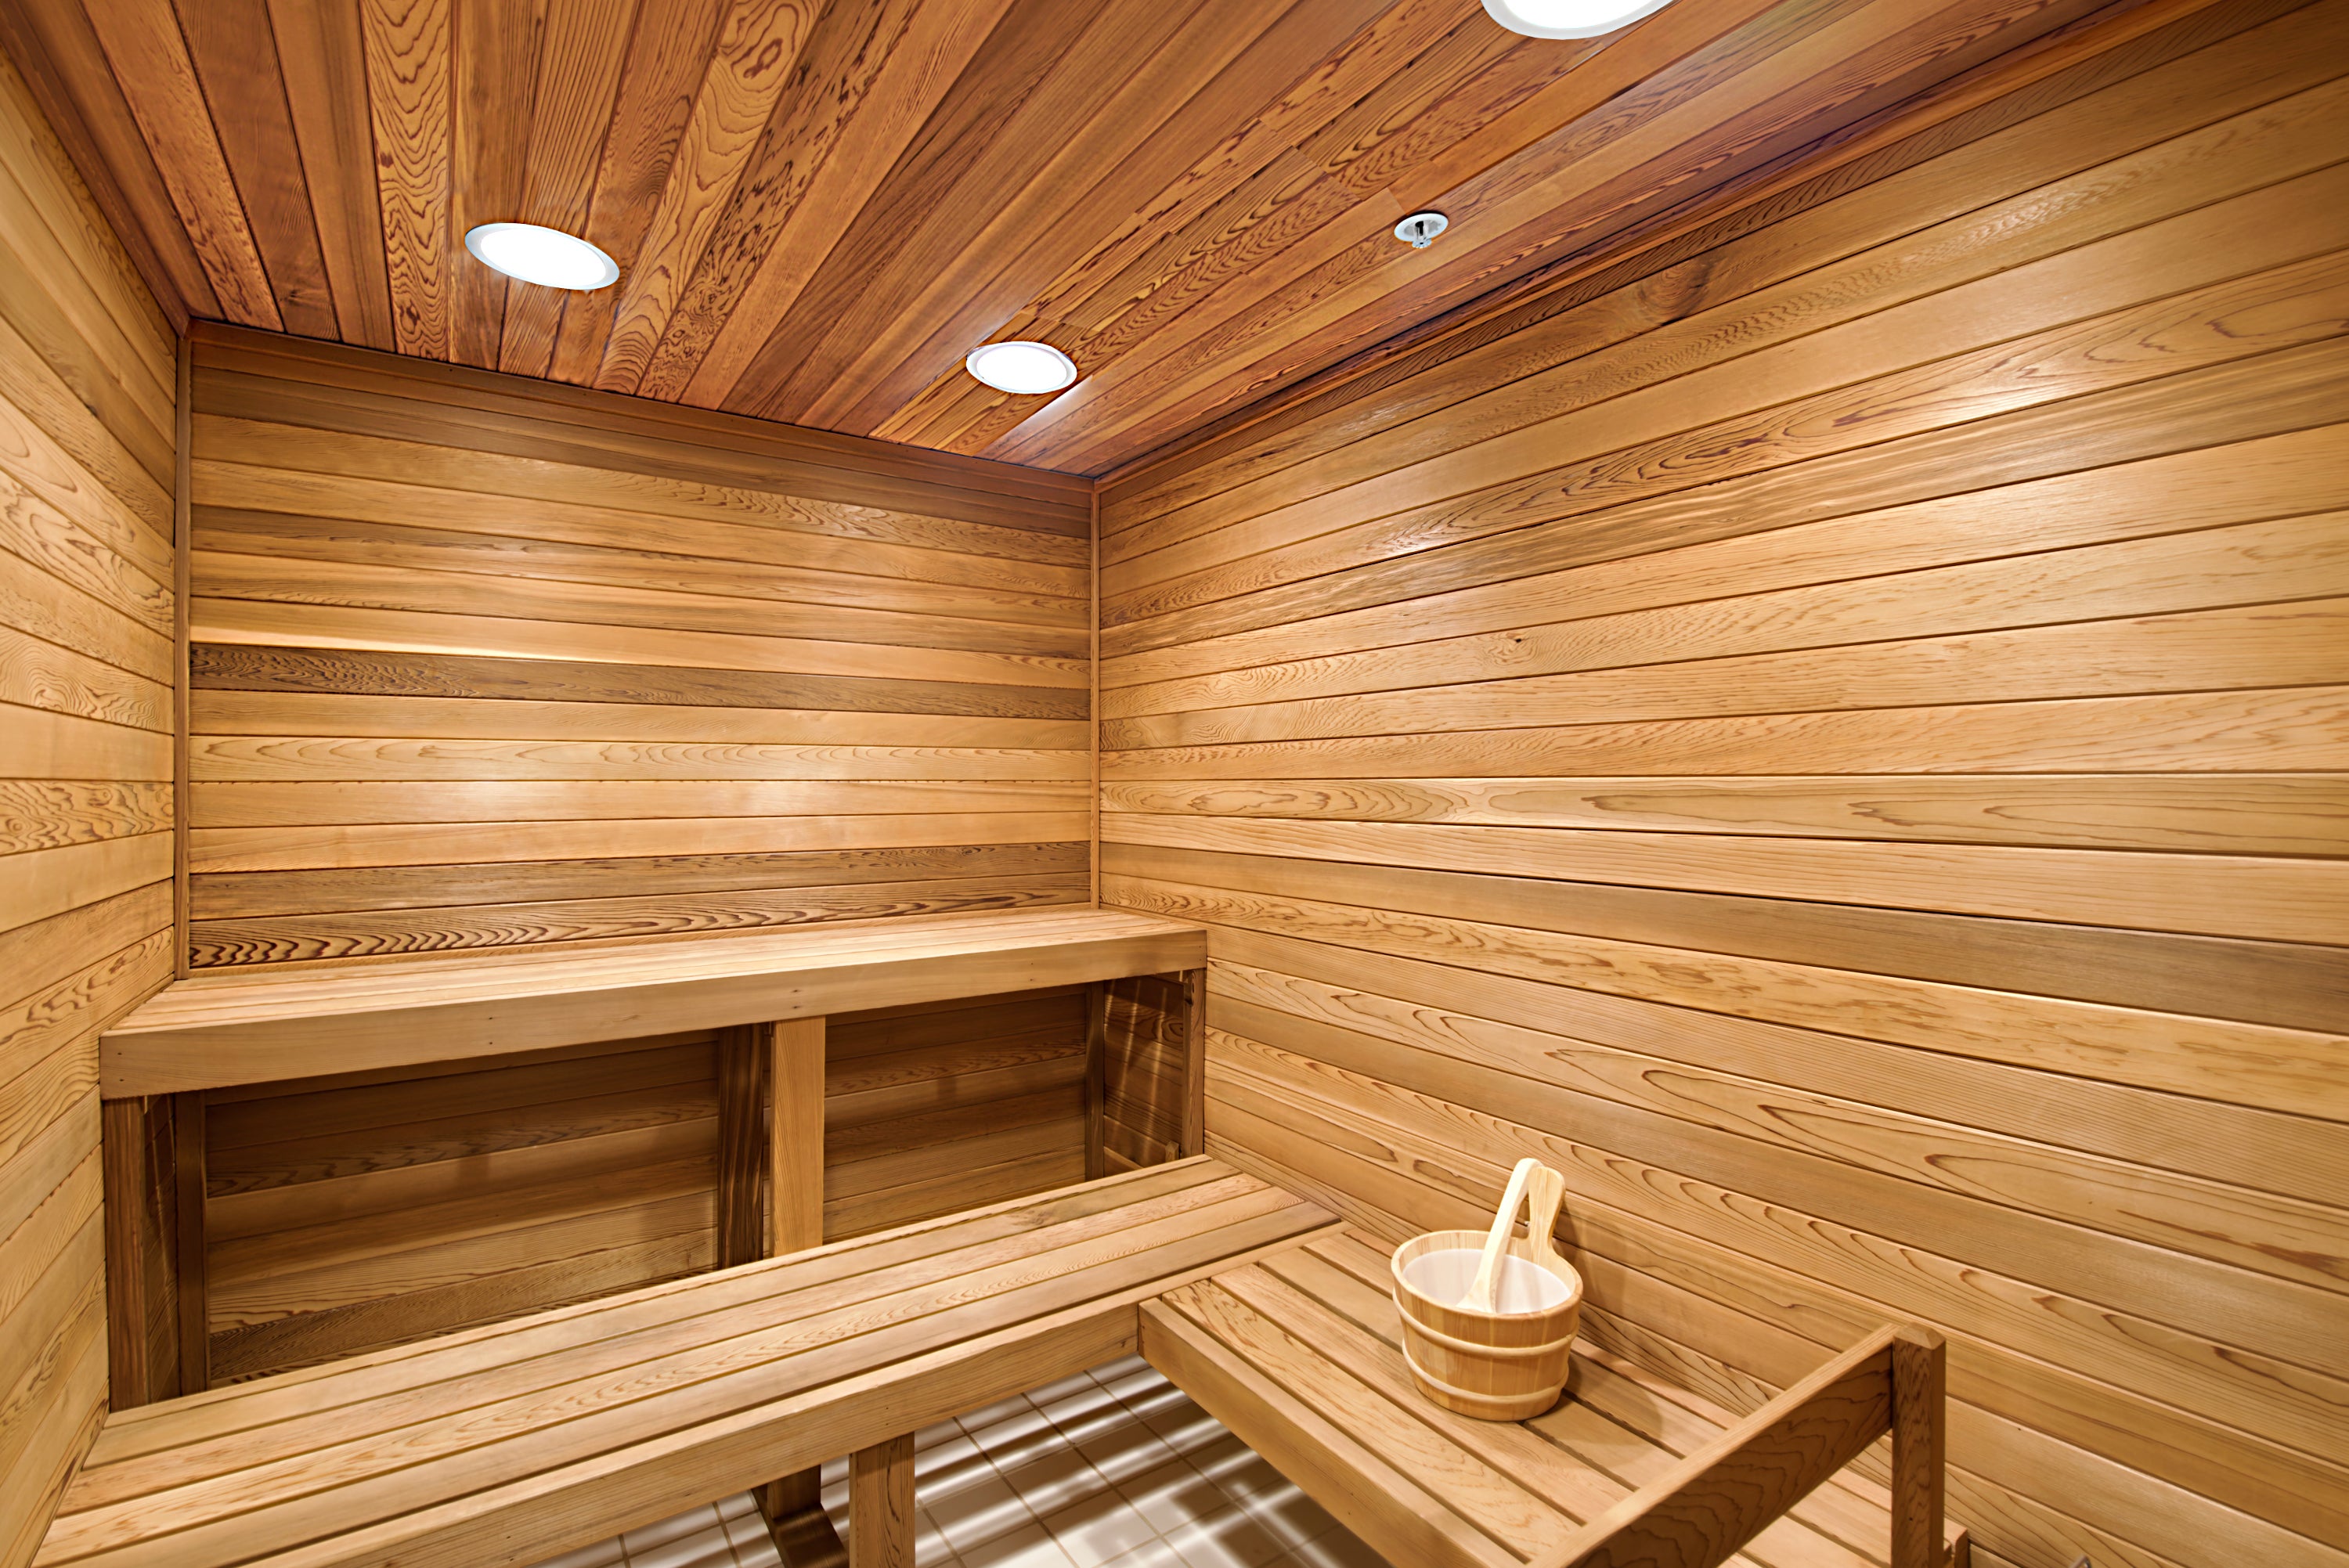 2 saunas in building